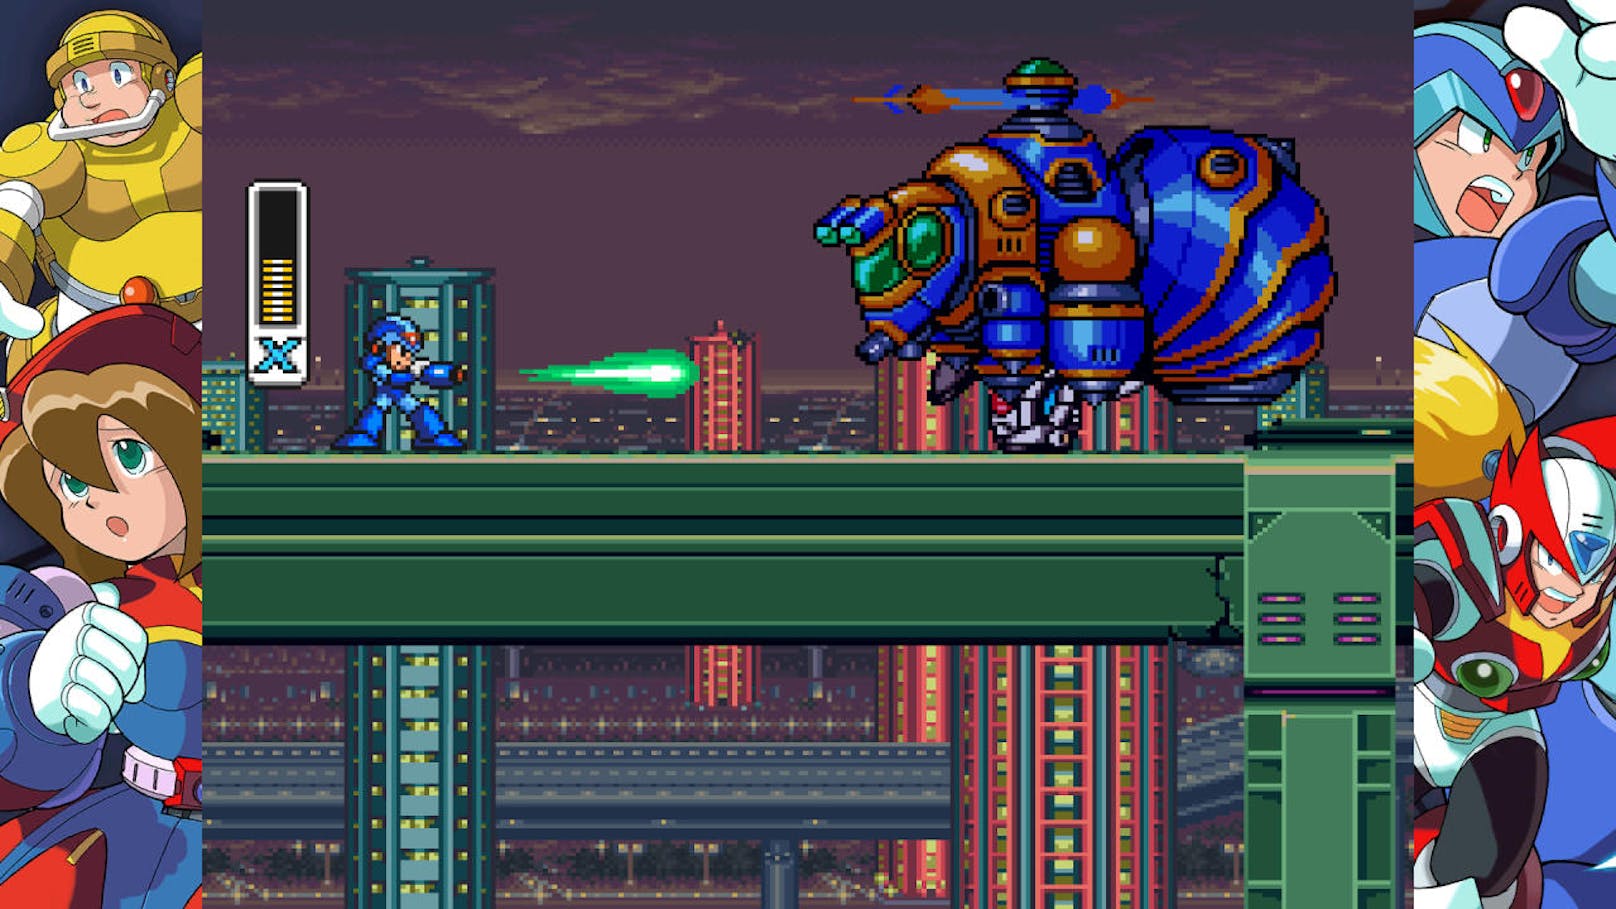 Capcom hat die Releasetermine für die kommenden Spielesammlungen Mega Man X Legacy Collection 1 und Mega Man X Legacy Collection 2 bekannt gegeben. Die beiden Spielesammlungen erscheinen am 24. Juni 2018 digital für PS4, Xbox One, PC und Nintendo Switch.